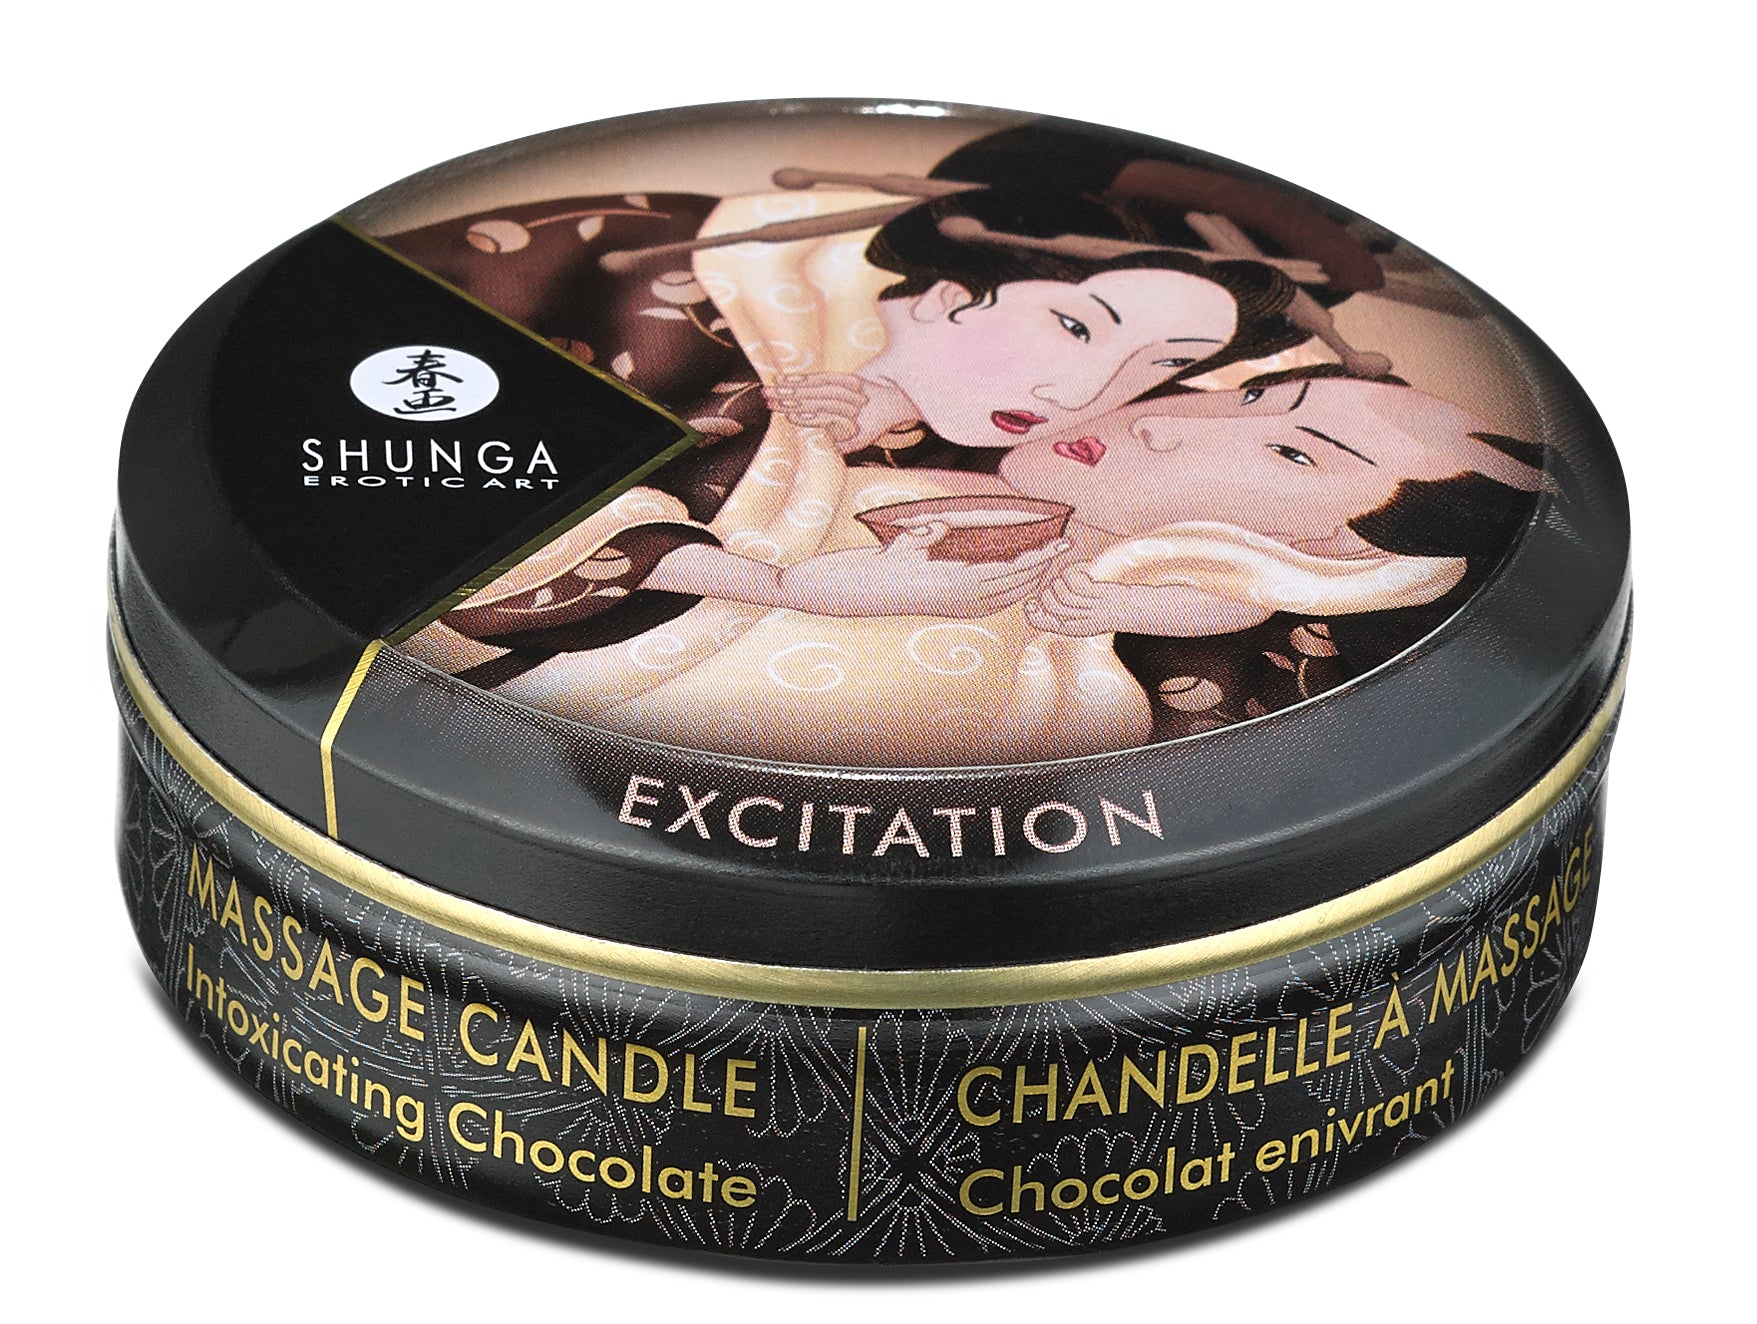 Shunga Mini Massage Candle Excitation Intoxicating Chocolate 1 Oz